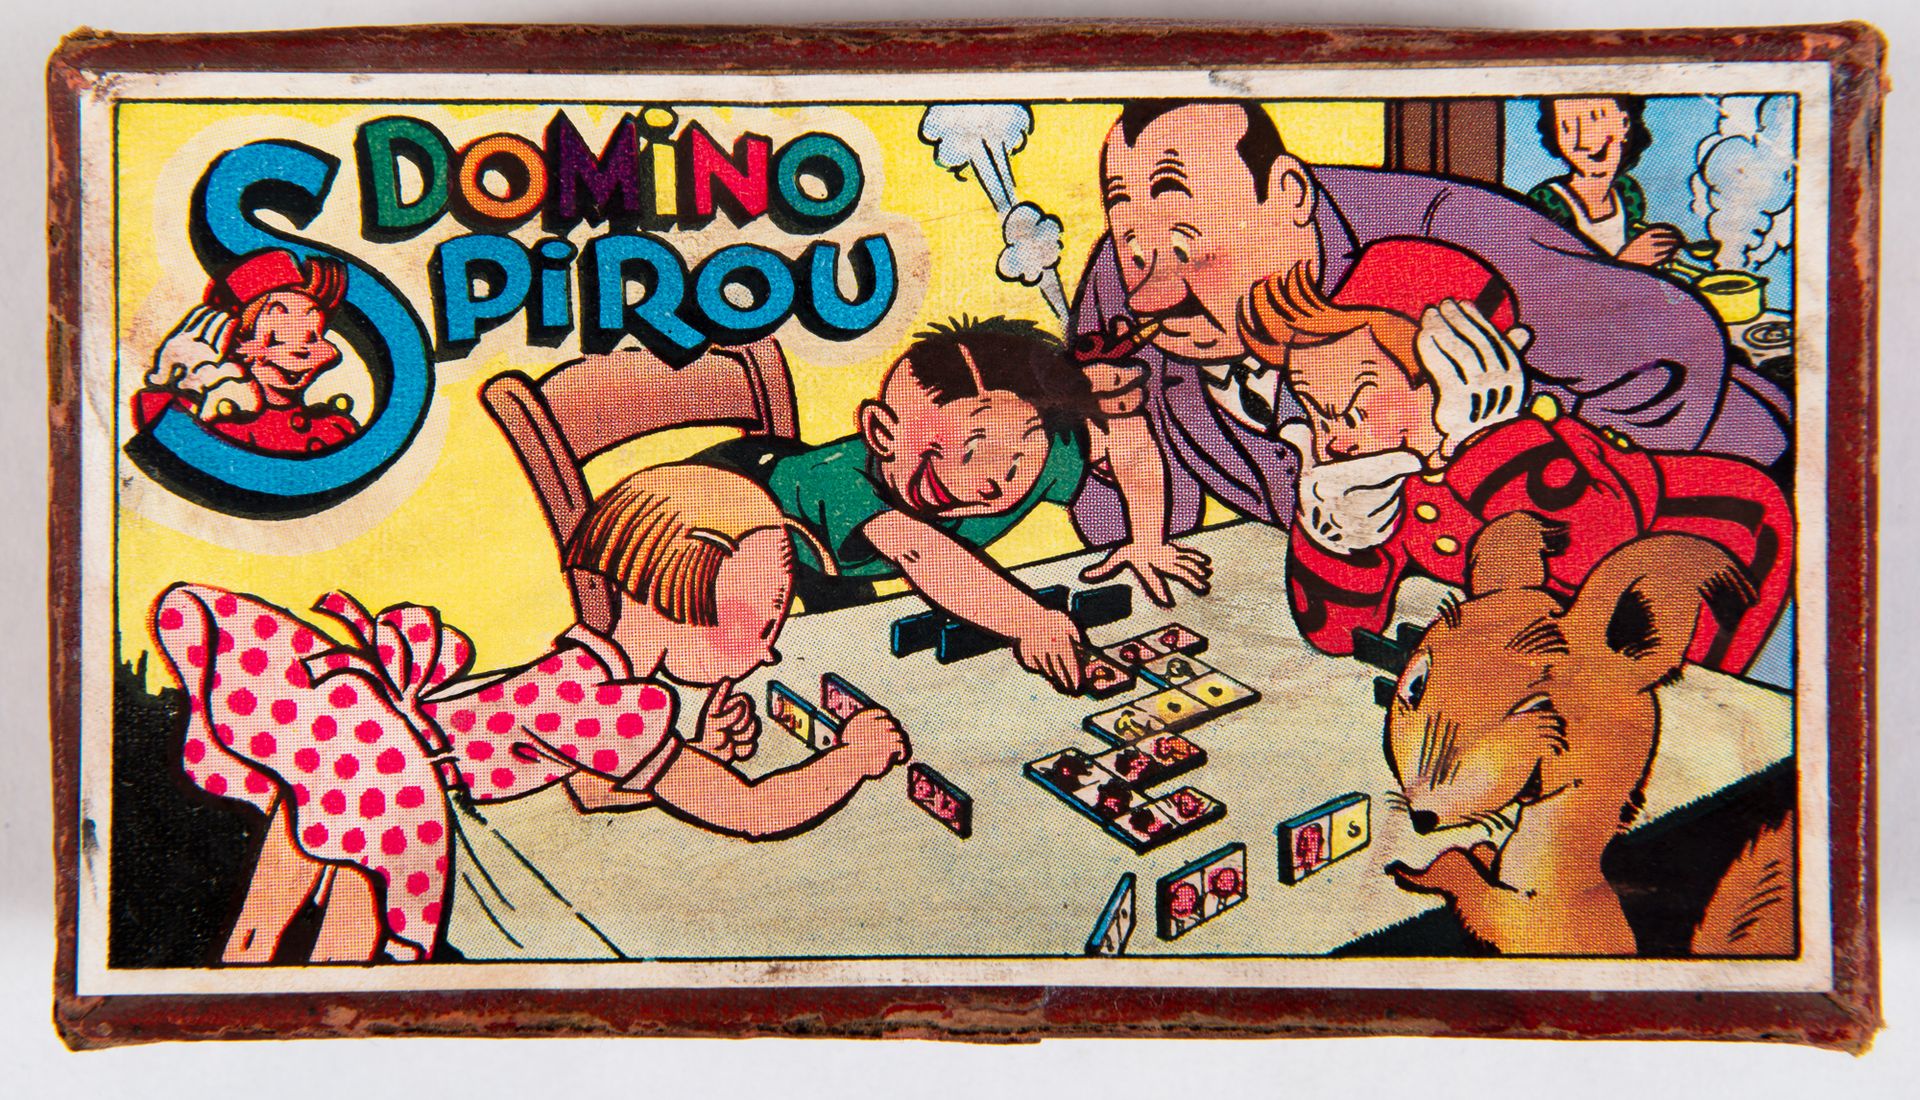 Null Spirou - Domino: Seltenes Spiel, das Ende der 1940er Jahre erschienen ist. &hellip;